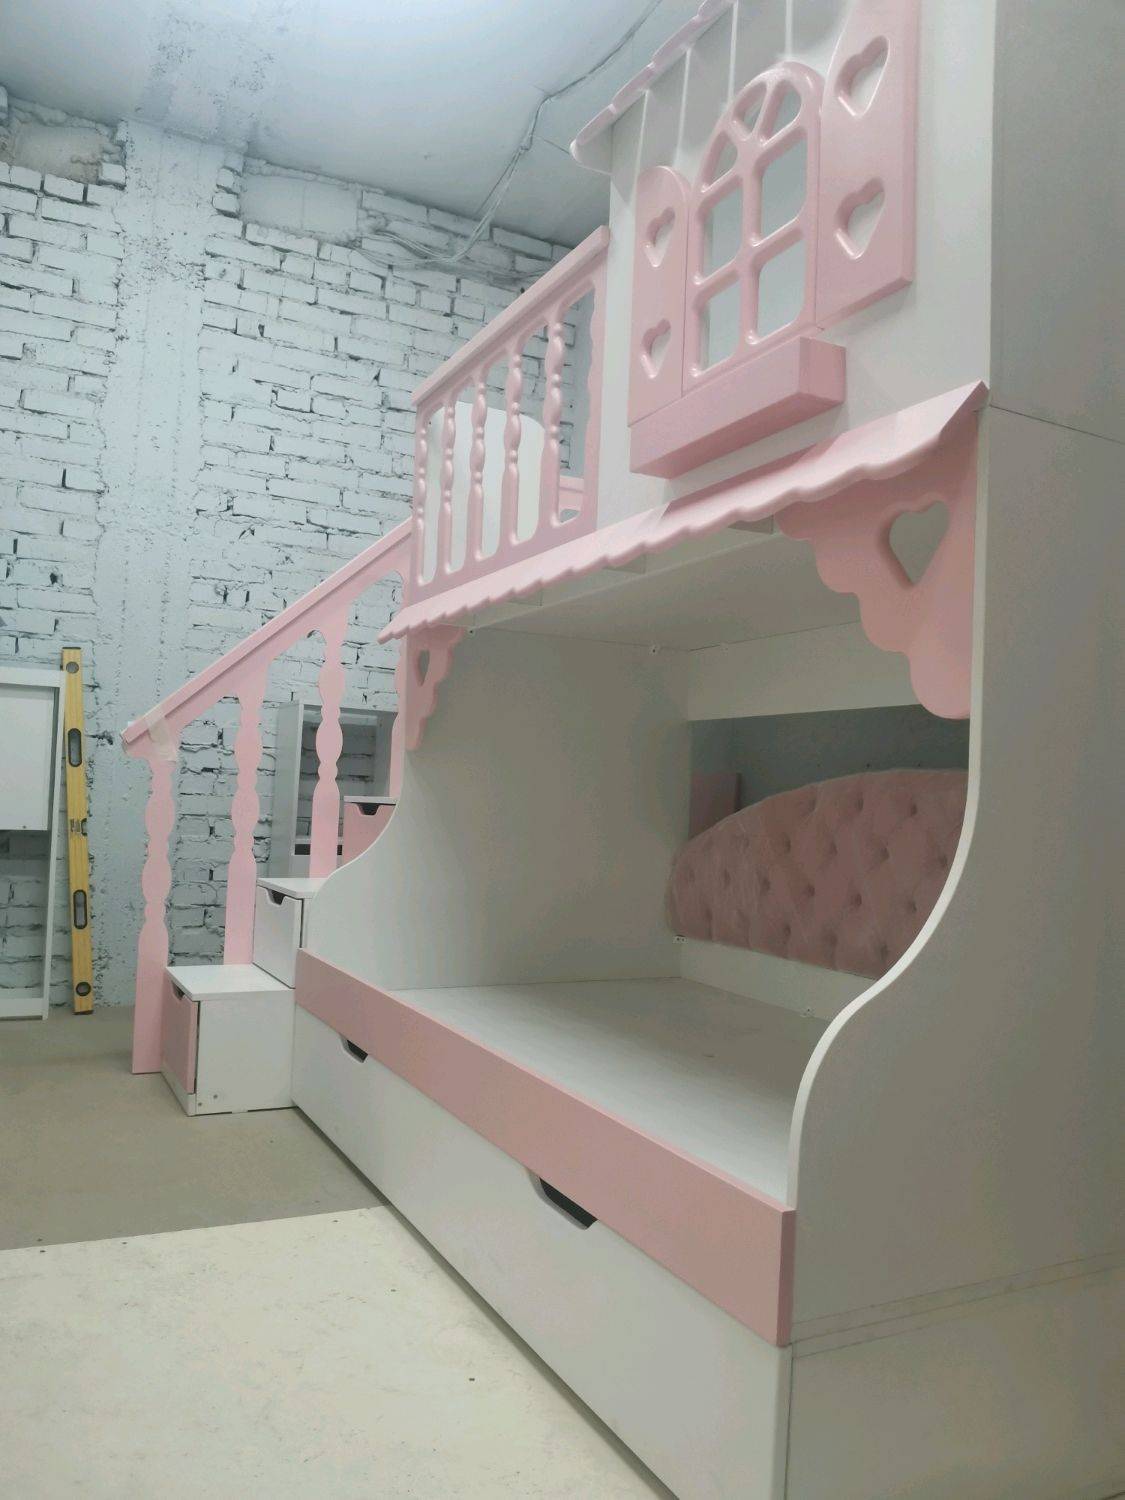 Детская кровать-чердак «Лахти 2.0» с лестницей-комодом